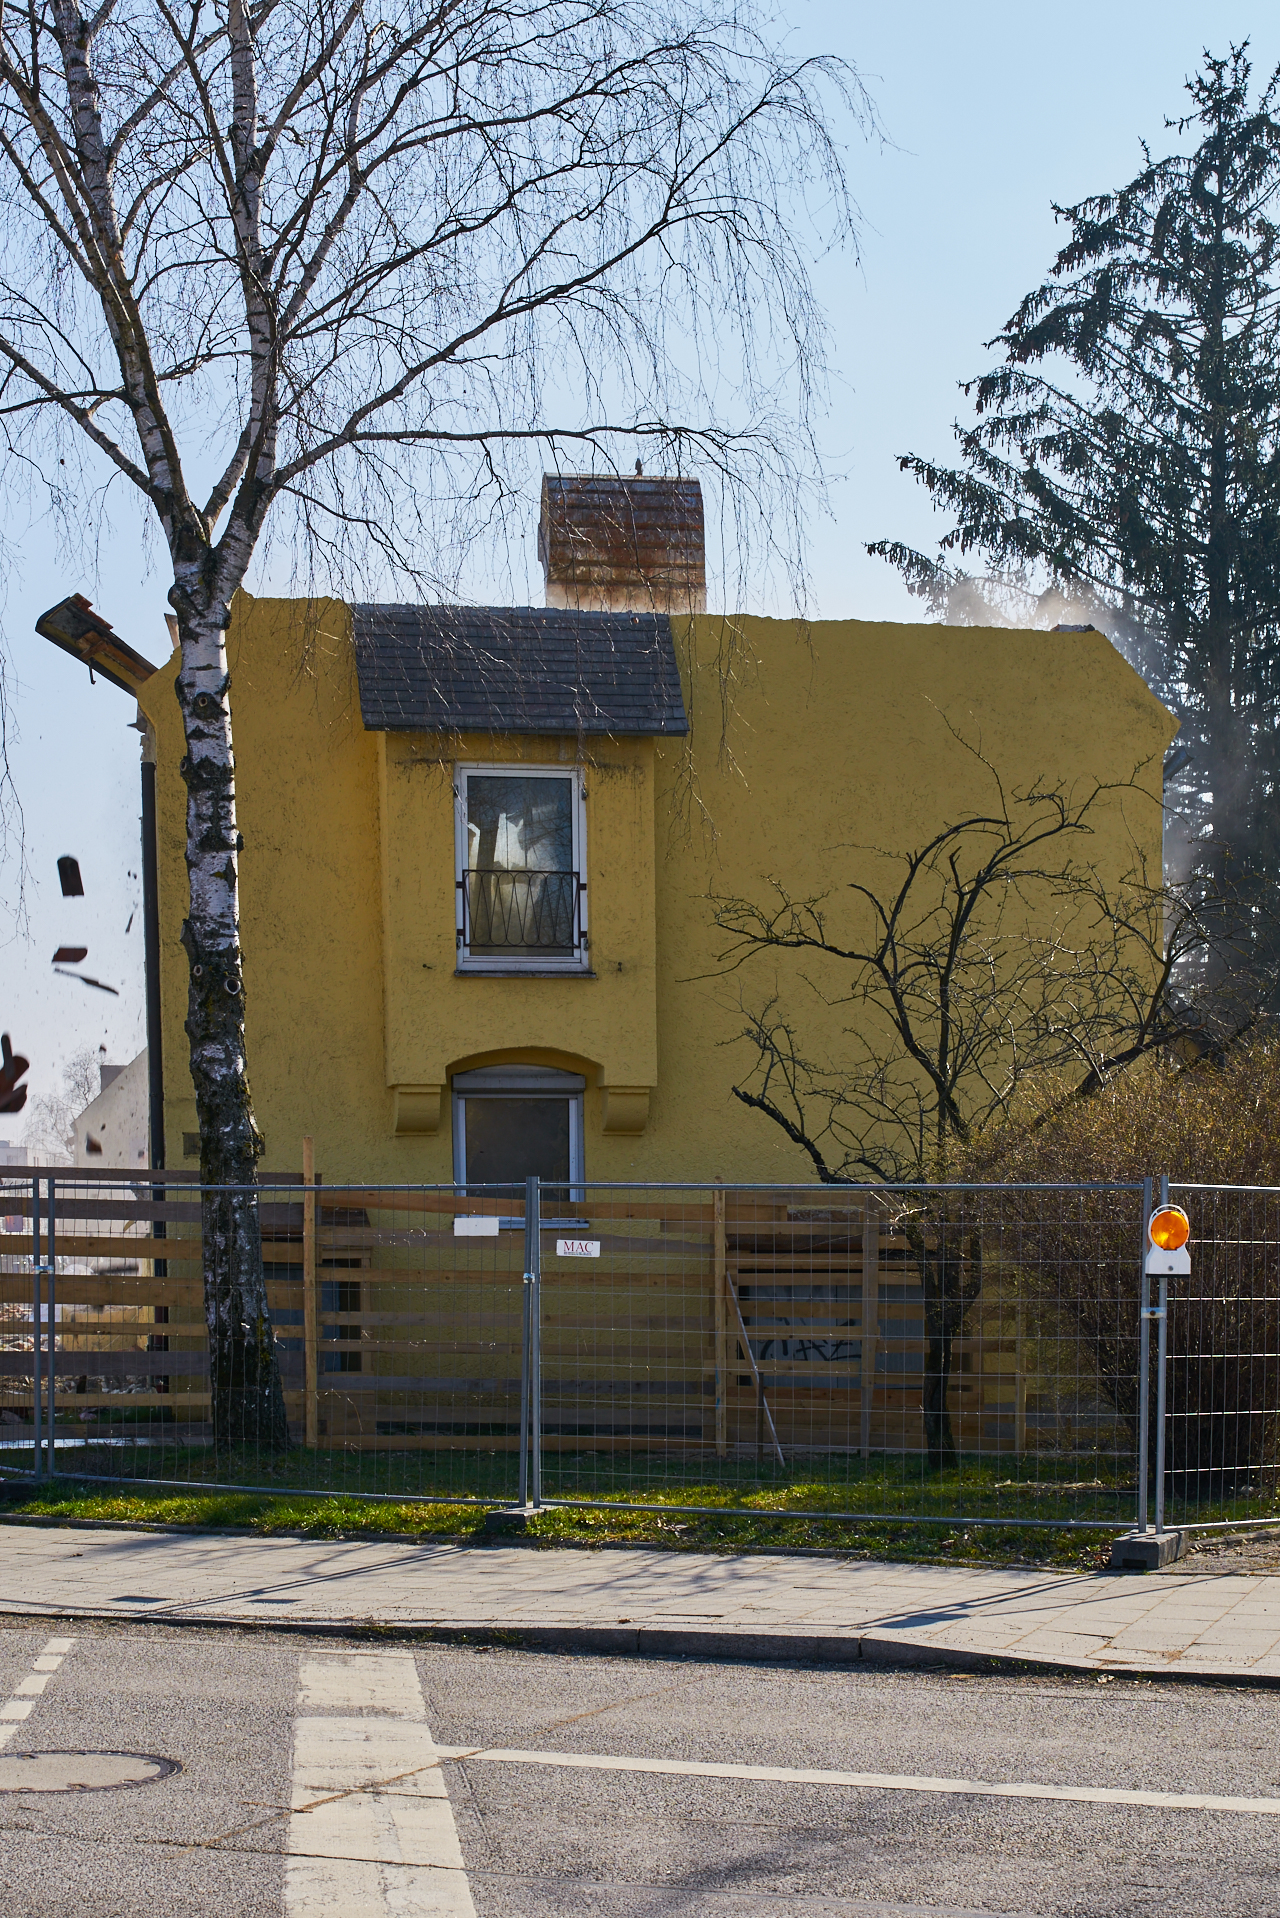 Neuperlach-maikaefersiedlung am 18.03.2016